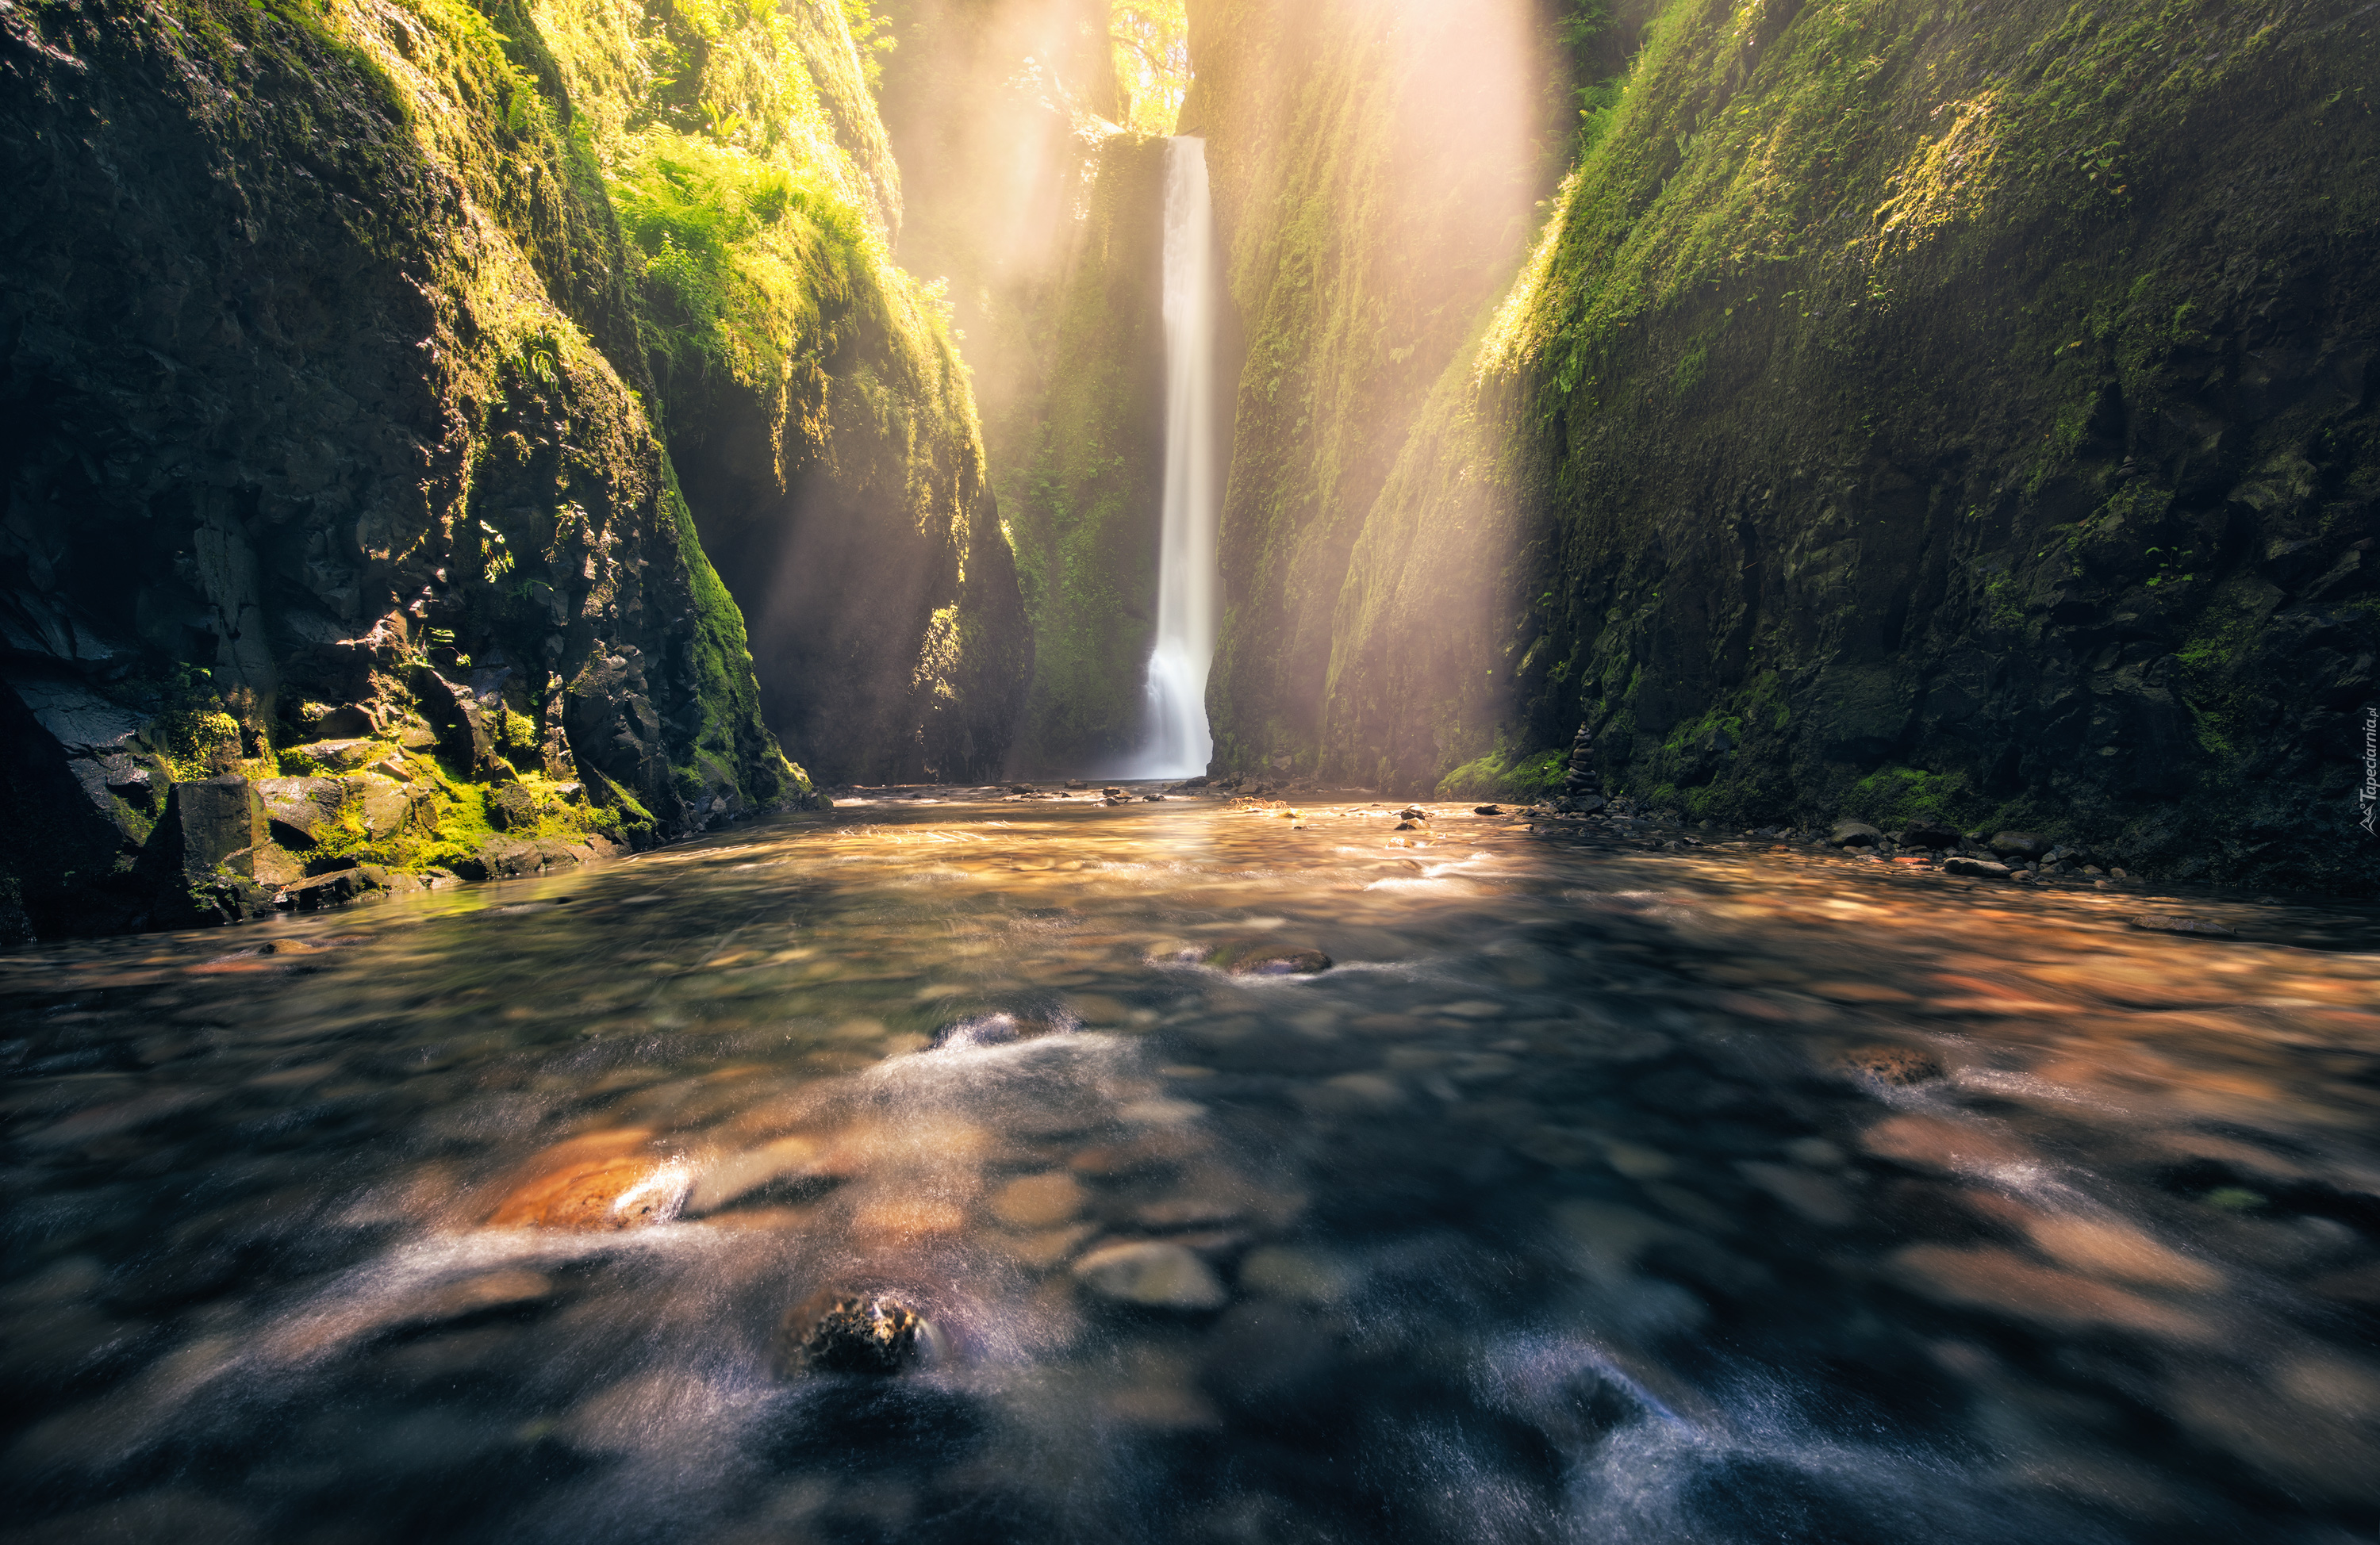 Wodospad Oneonta Gorge, Rzeka Oneonta Creek, Wąwóz Oneonta, Roślinność, Kamienie, Skały, Rezerwat przyrody Columbia River, Stan Oregon, Stany Zjednoczone